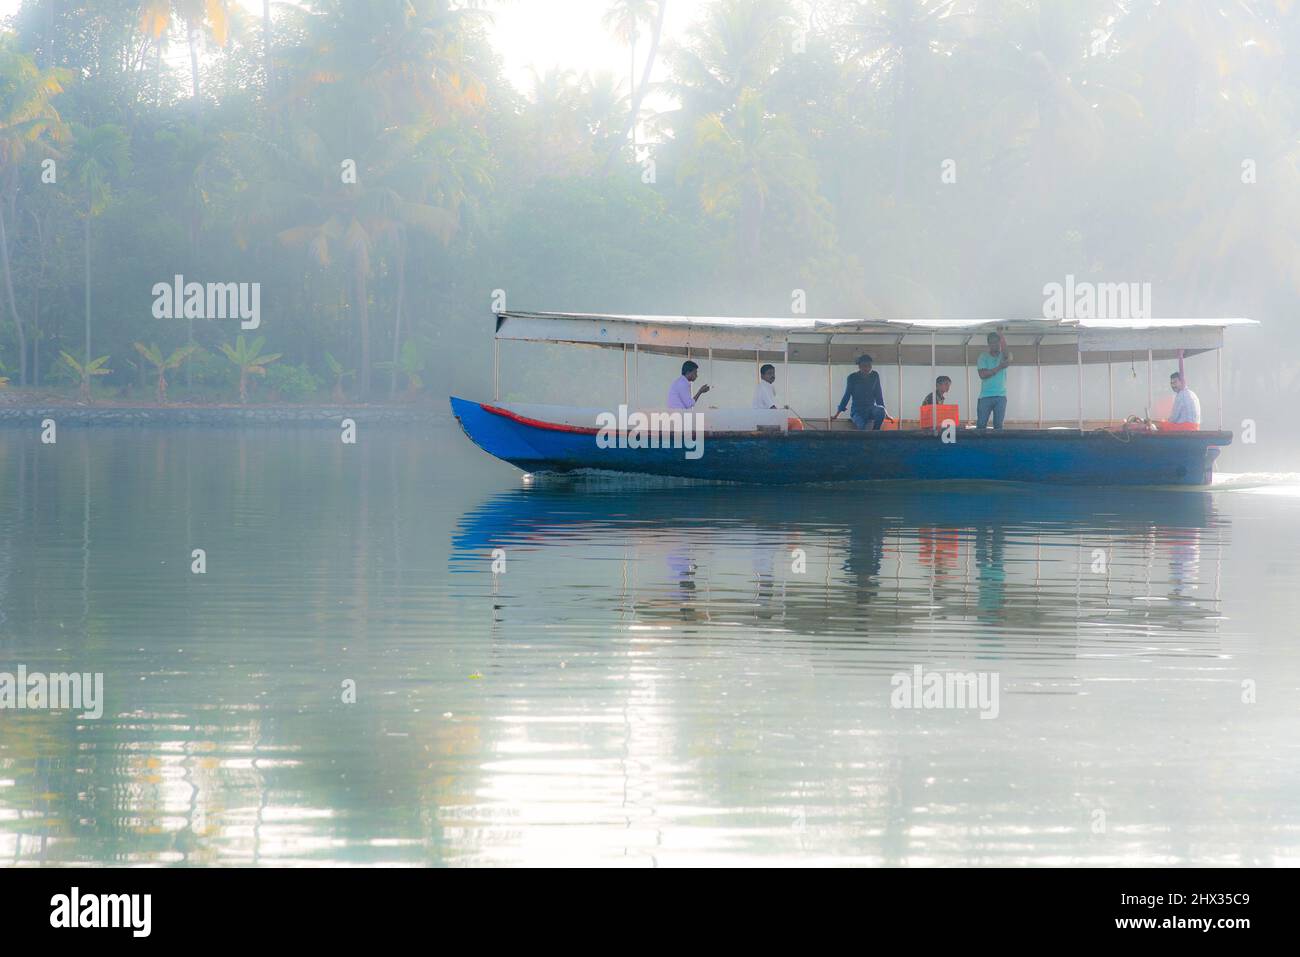 Un bateau à riz traditionnel ou kettuvallam, les eaux de Kerala, en Inde, les kettuvallams étaient traditionnellement utilisés comme barges à céréales, pour transporter le riz harv Banque D'Images